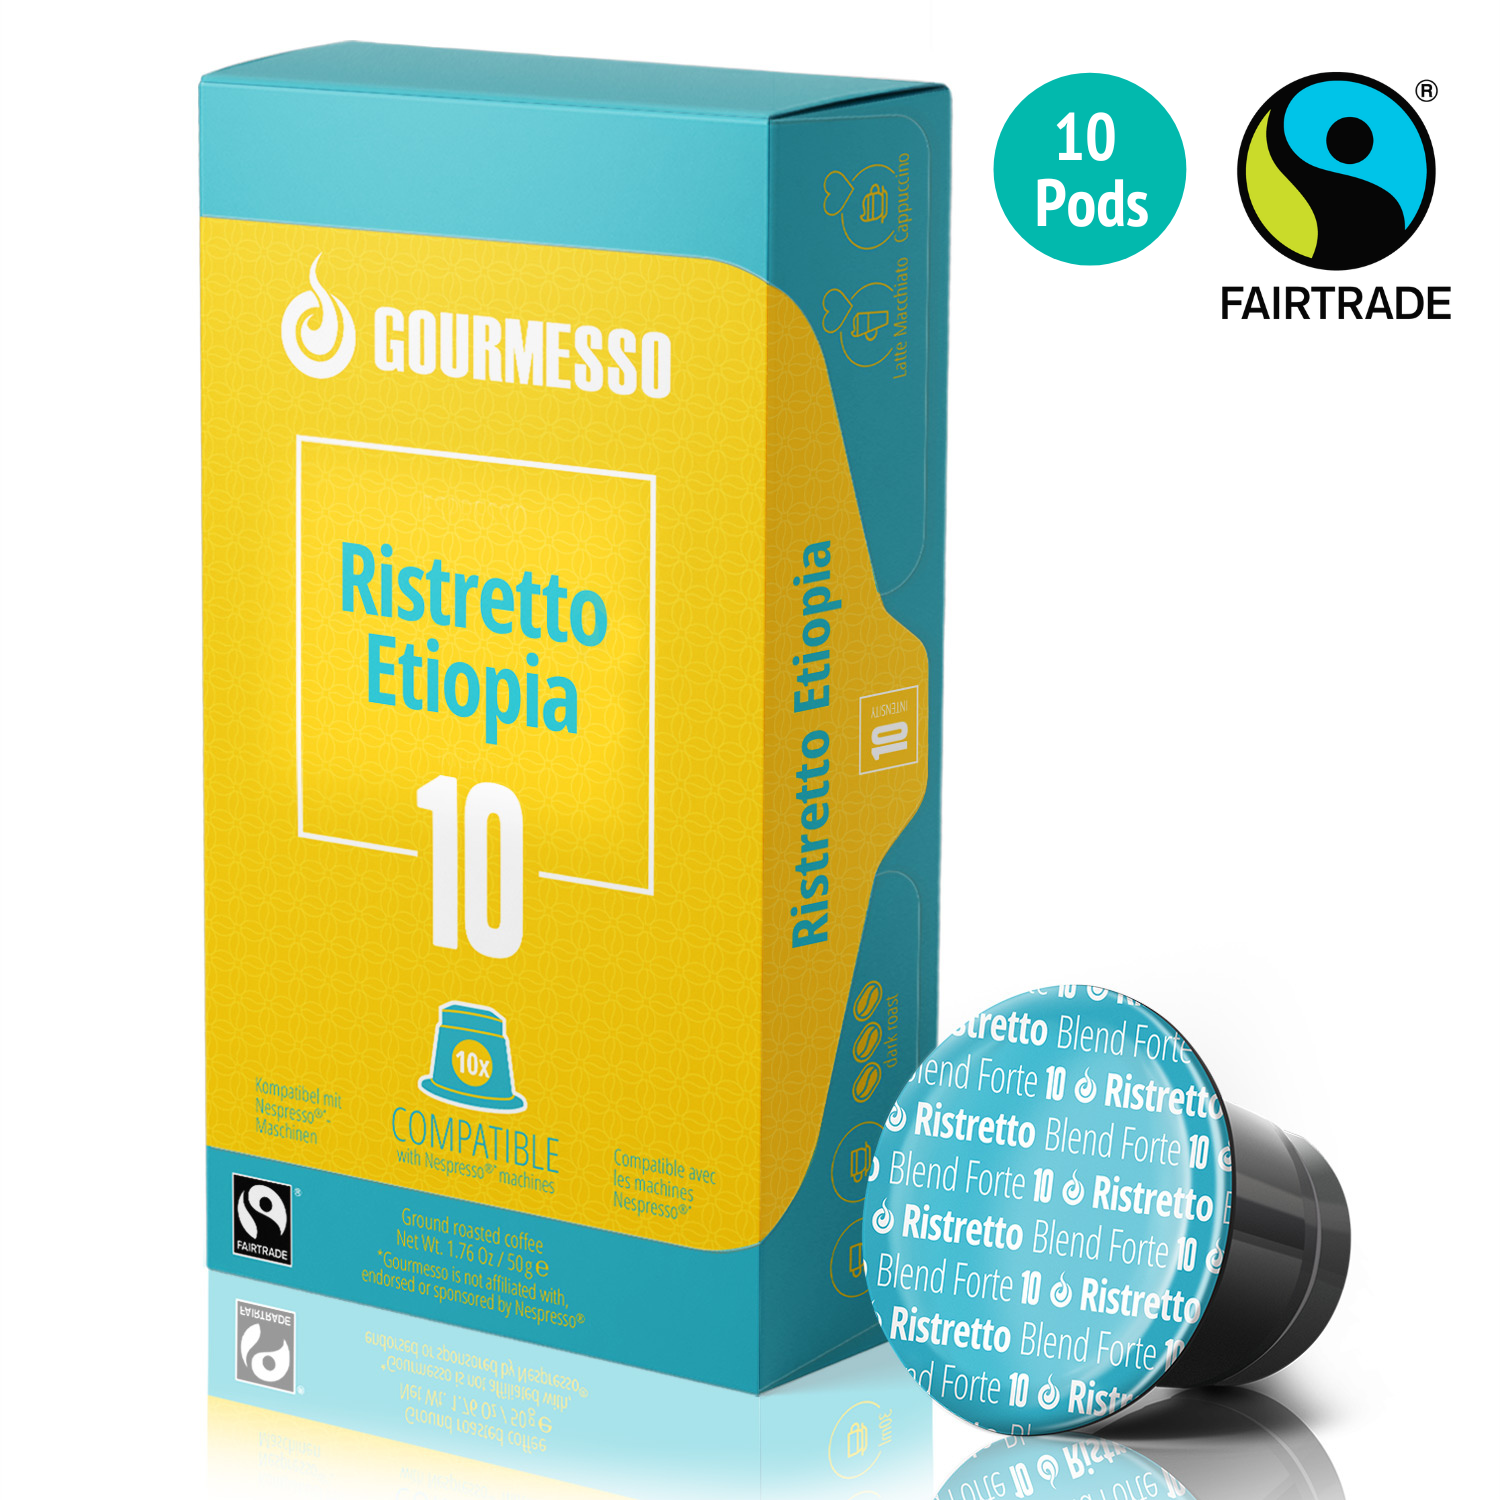 Image of Gourmesso Ristretto Etiopia - Fairtrade - 10 Pods